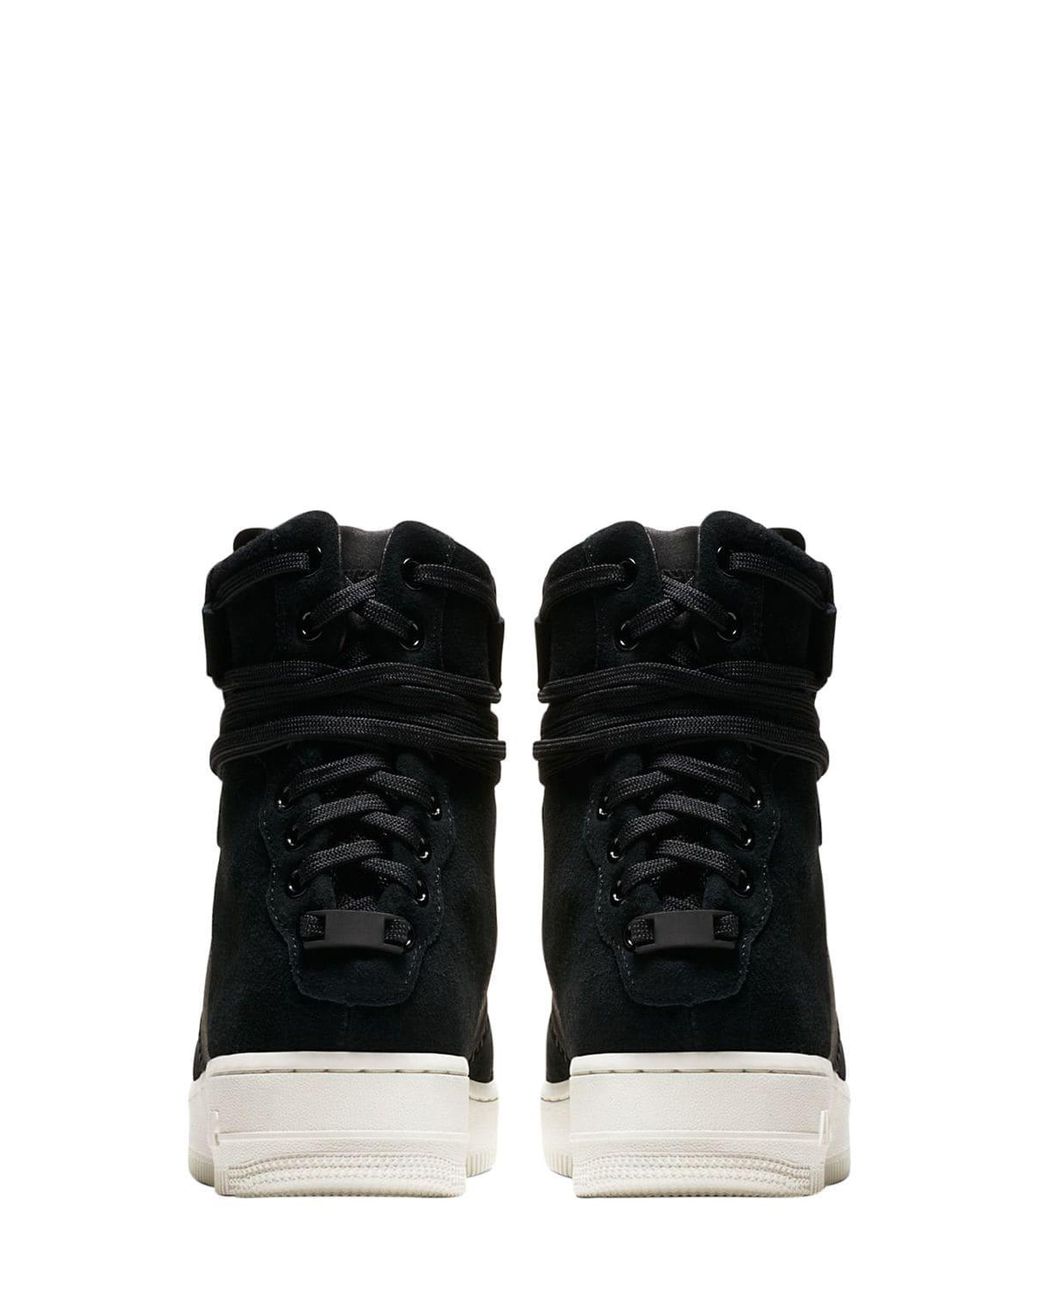 Nike Af1 Rebel Xx Prm Sneakers in Black | Lyst